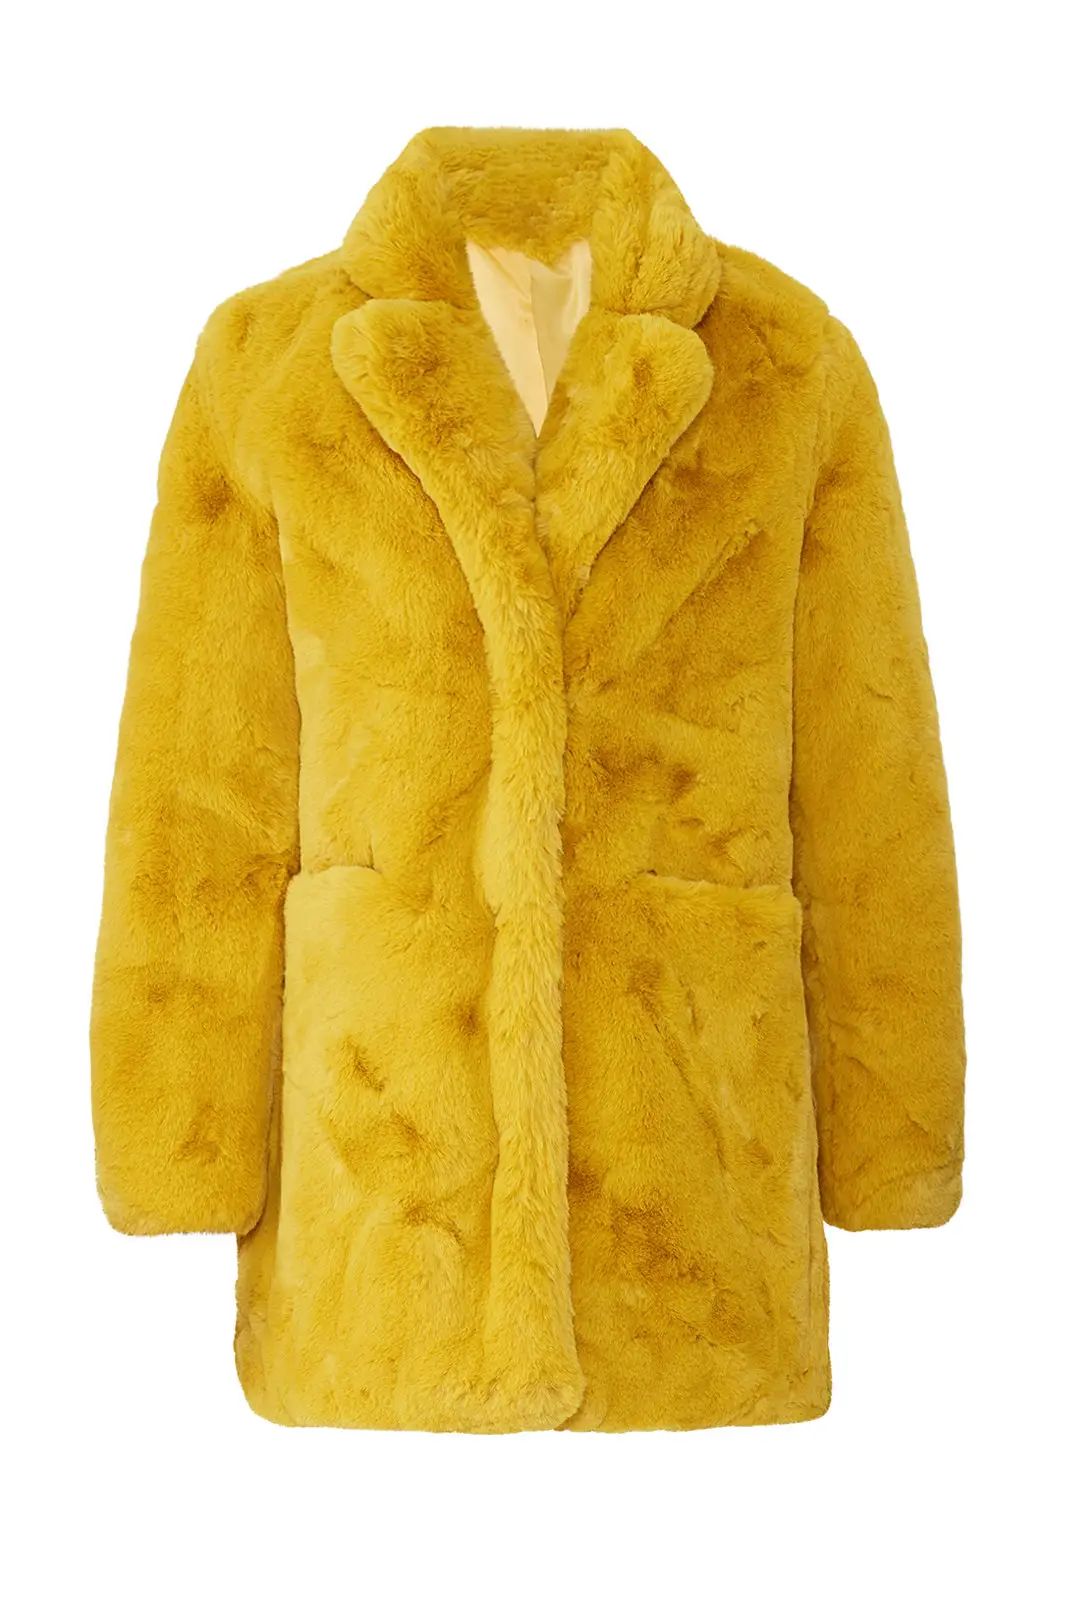 Apparis Mustard Sophie Faux Fur Coat | Rent The Runway